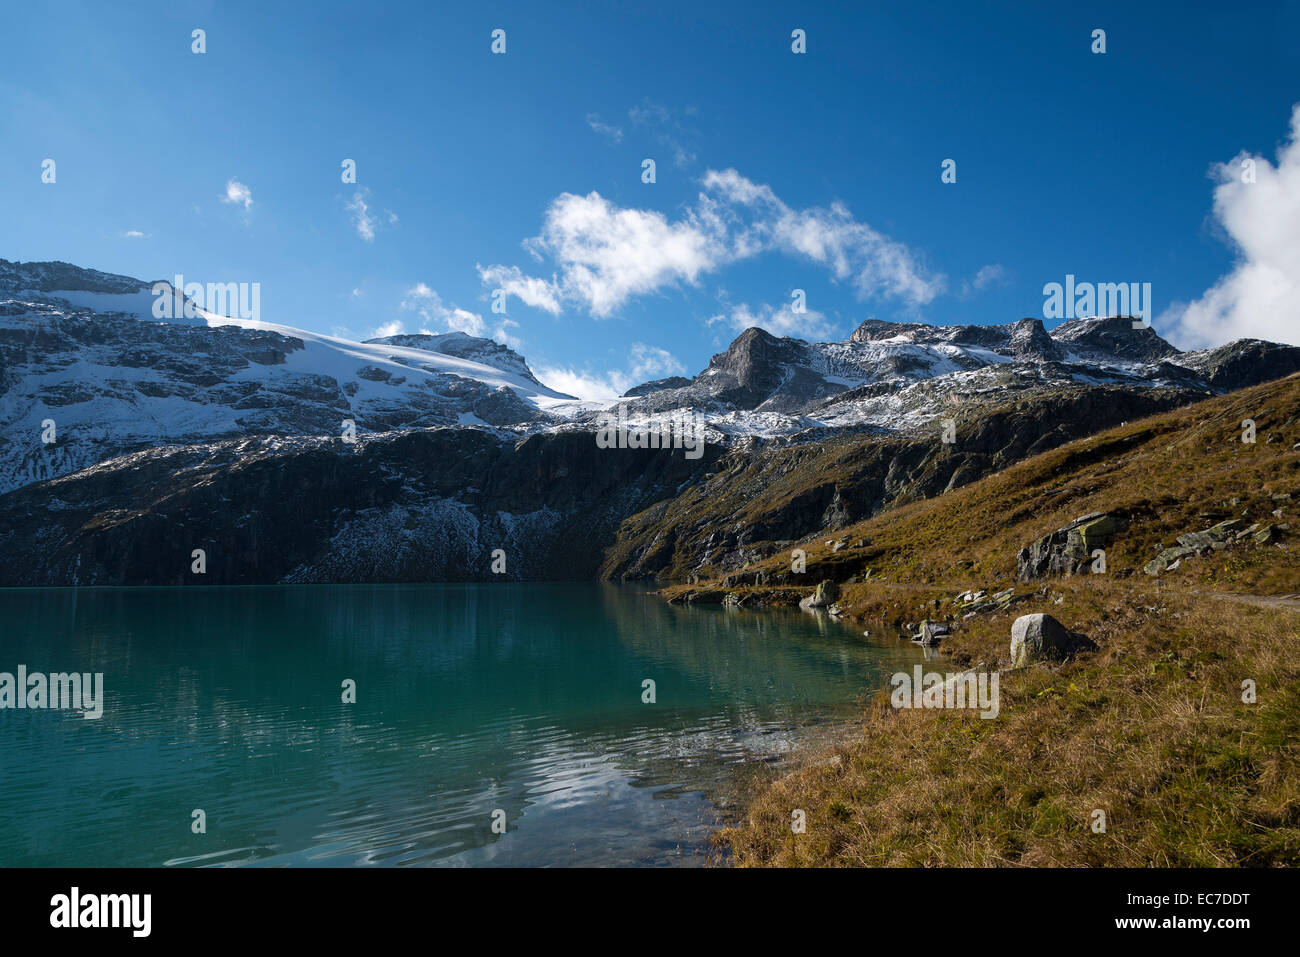 Austria, Salzburg State, Pinzgau, Weisssee mountain lake Stock Photo